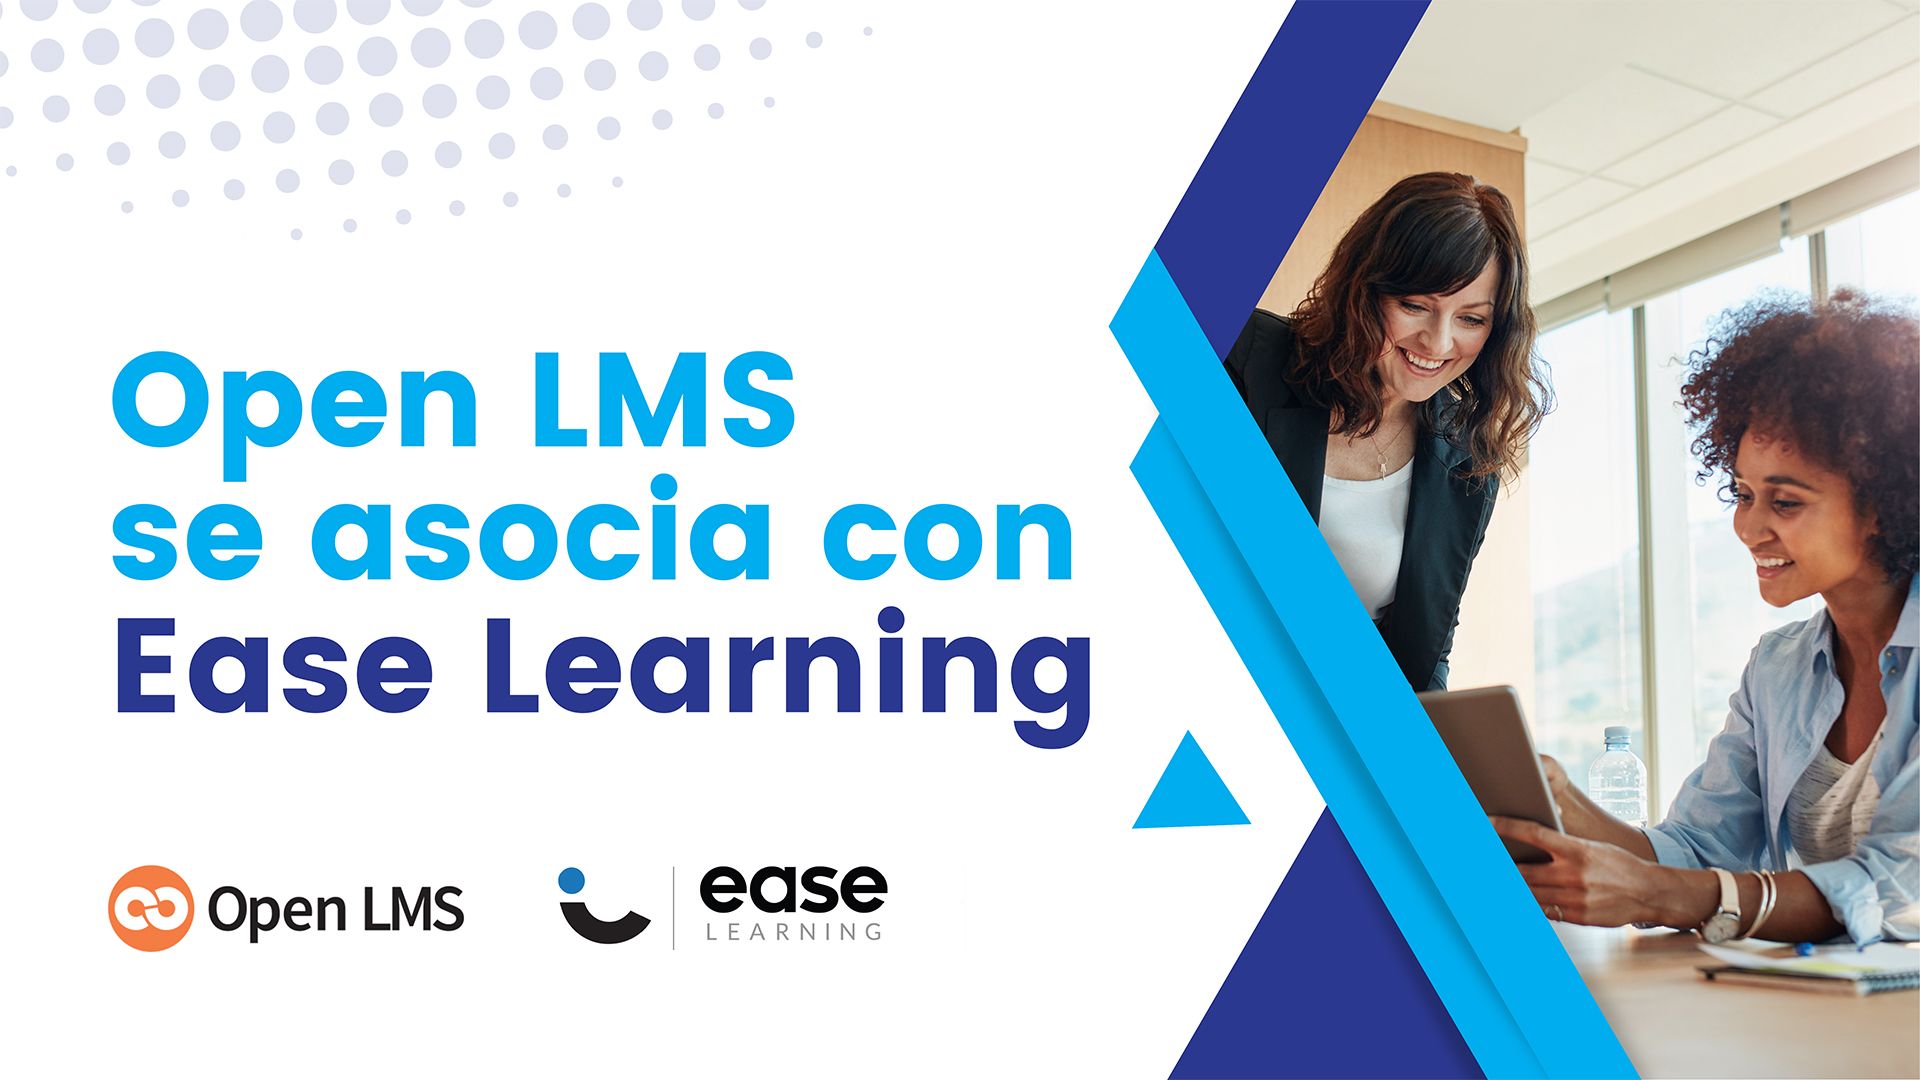 Open LMS se asocia con Ease Learning, integrando el servicio Skillways para reforzar los resultados del aprendizaje basado en competencias